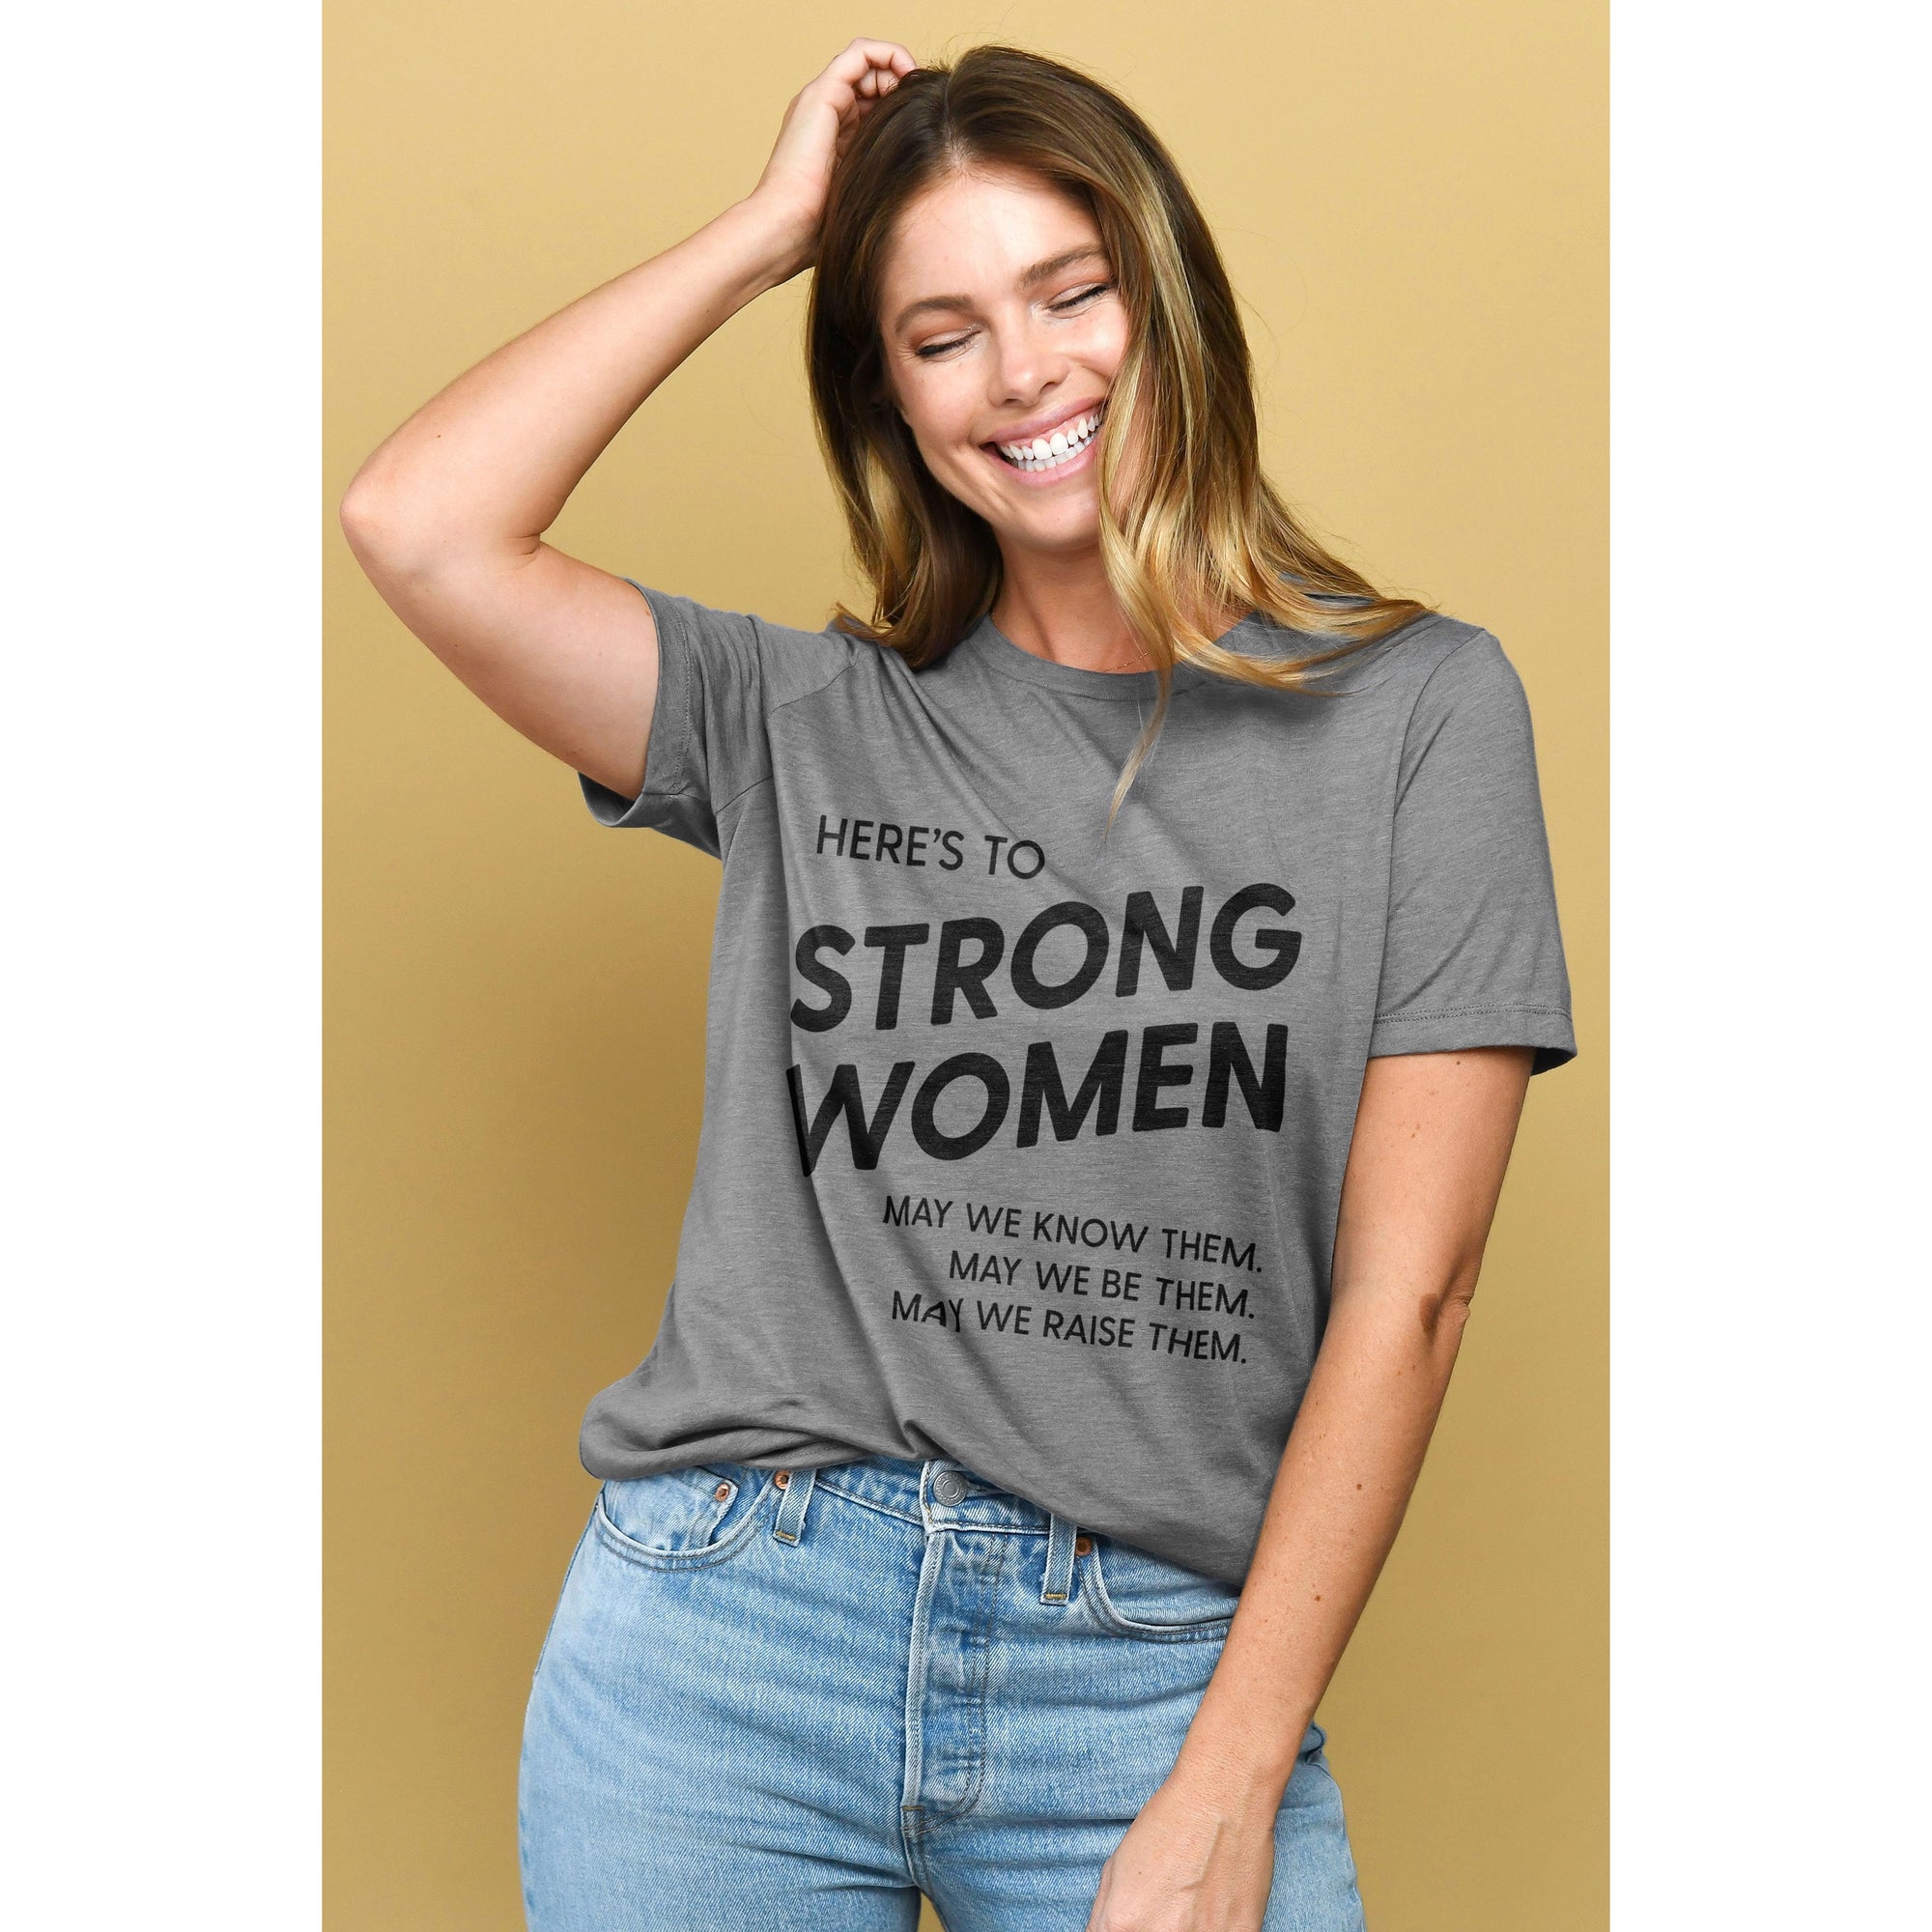 Prime Training Shirt - Women – STRYVE — For the better.